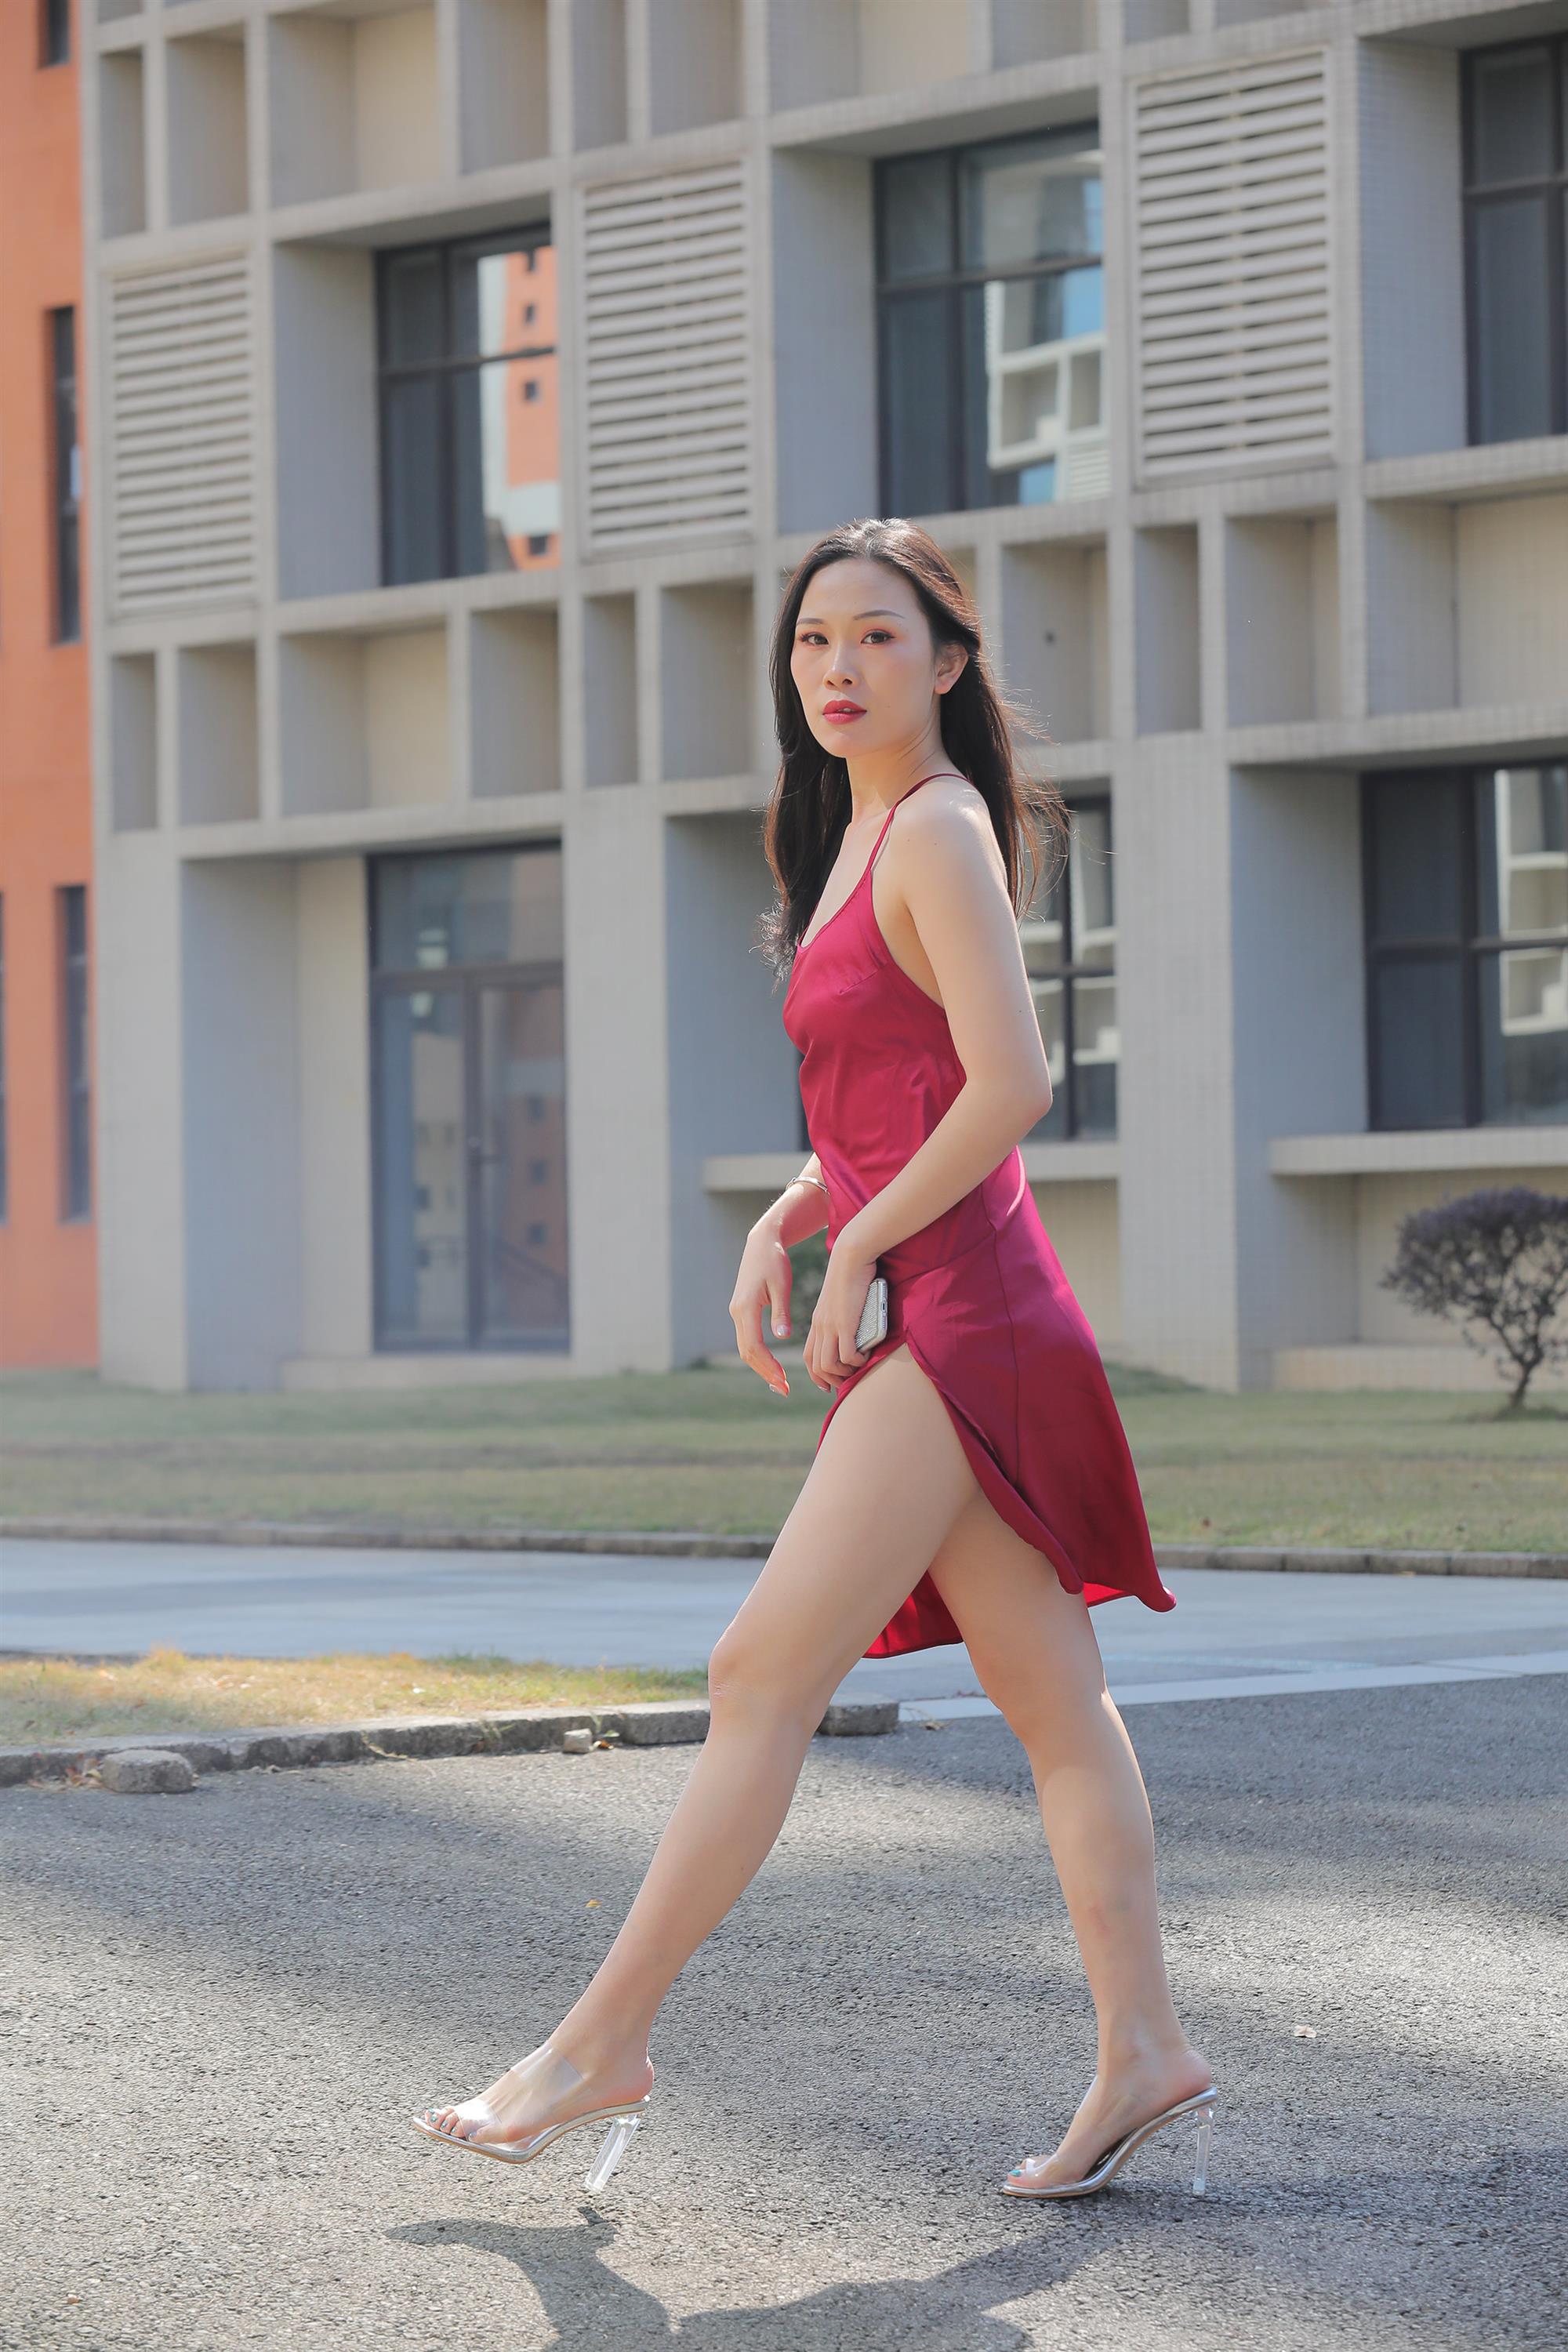 Street beauty in a red dress - 25.jpg